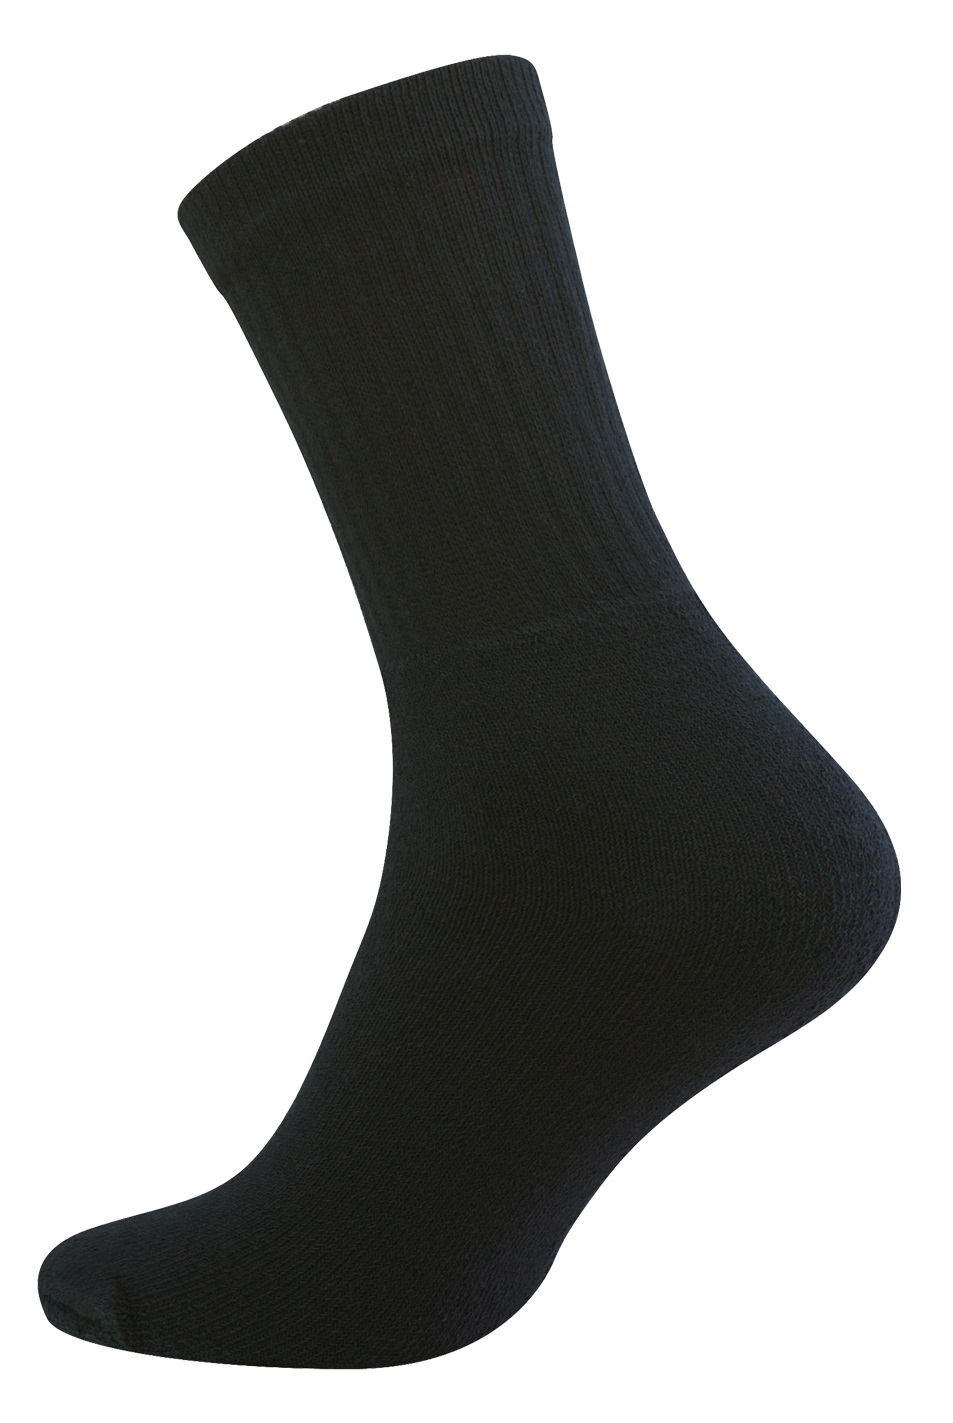 Frottee Arbeits- schwarze 10 Socken, Paar Cottonprime.de Baumwoll